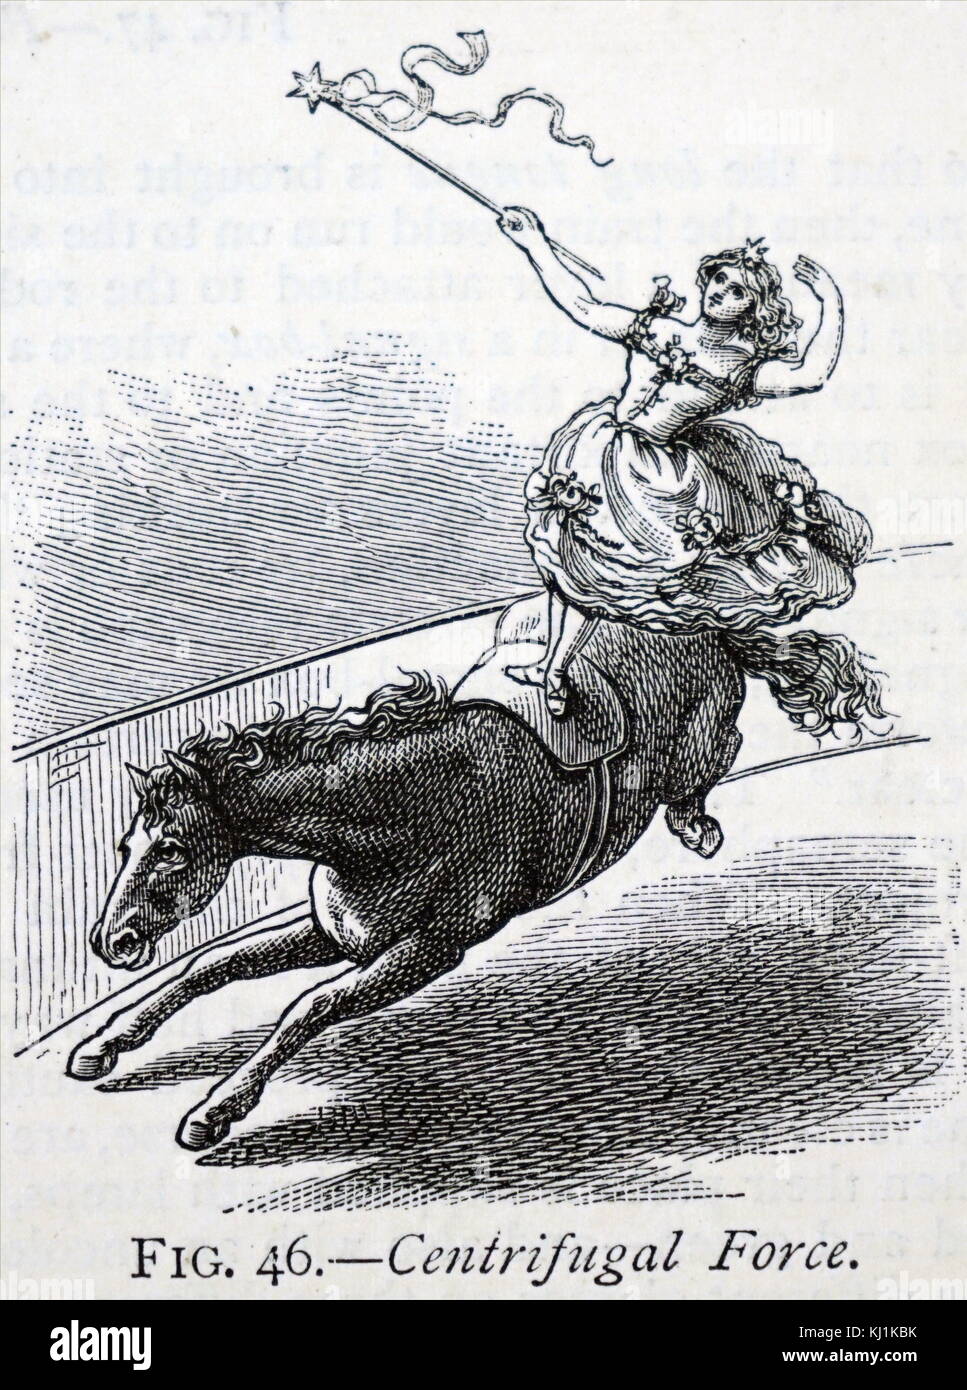 Gravure montrant comment la force centrifuge permet à l'artiste de cirque garder équilibre tout en montant un cheval. En date du 19e siècle Banque D'Images